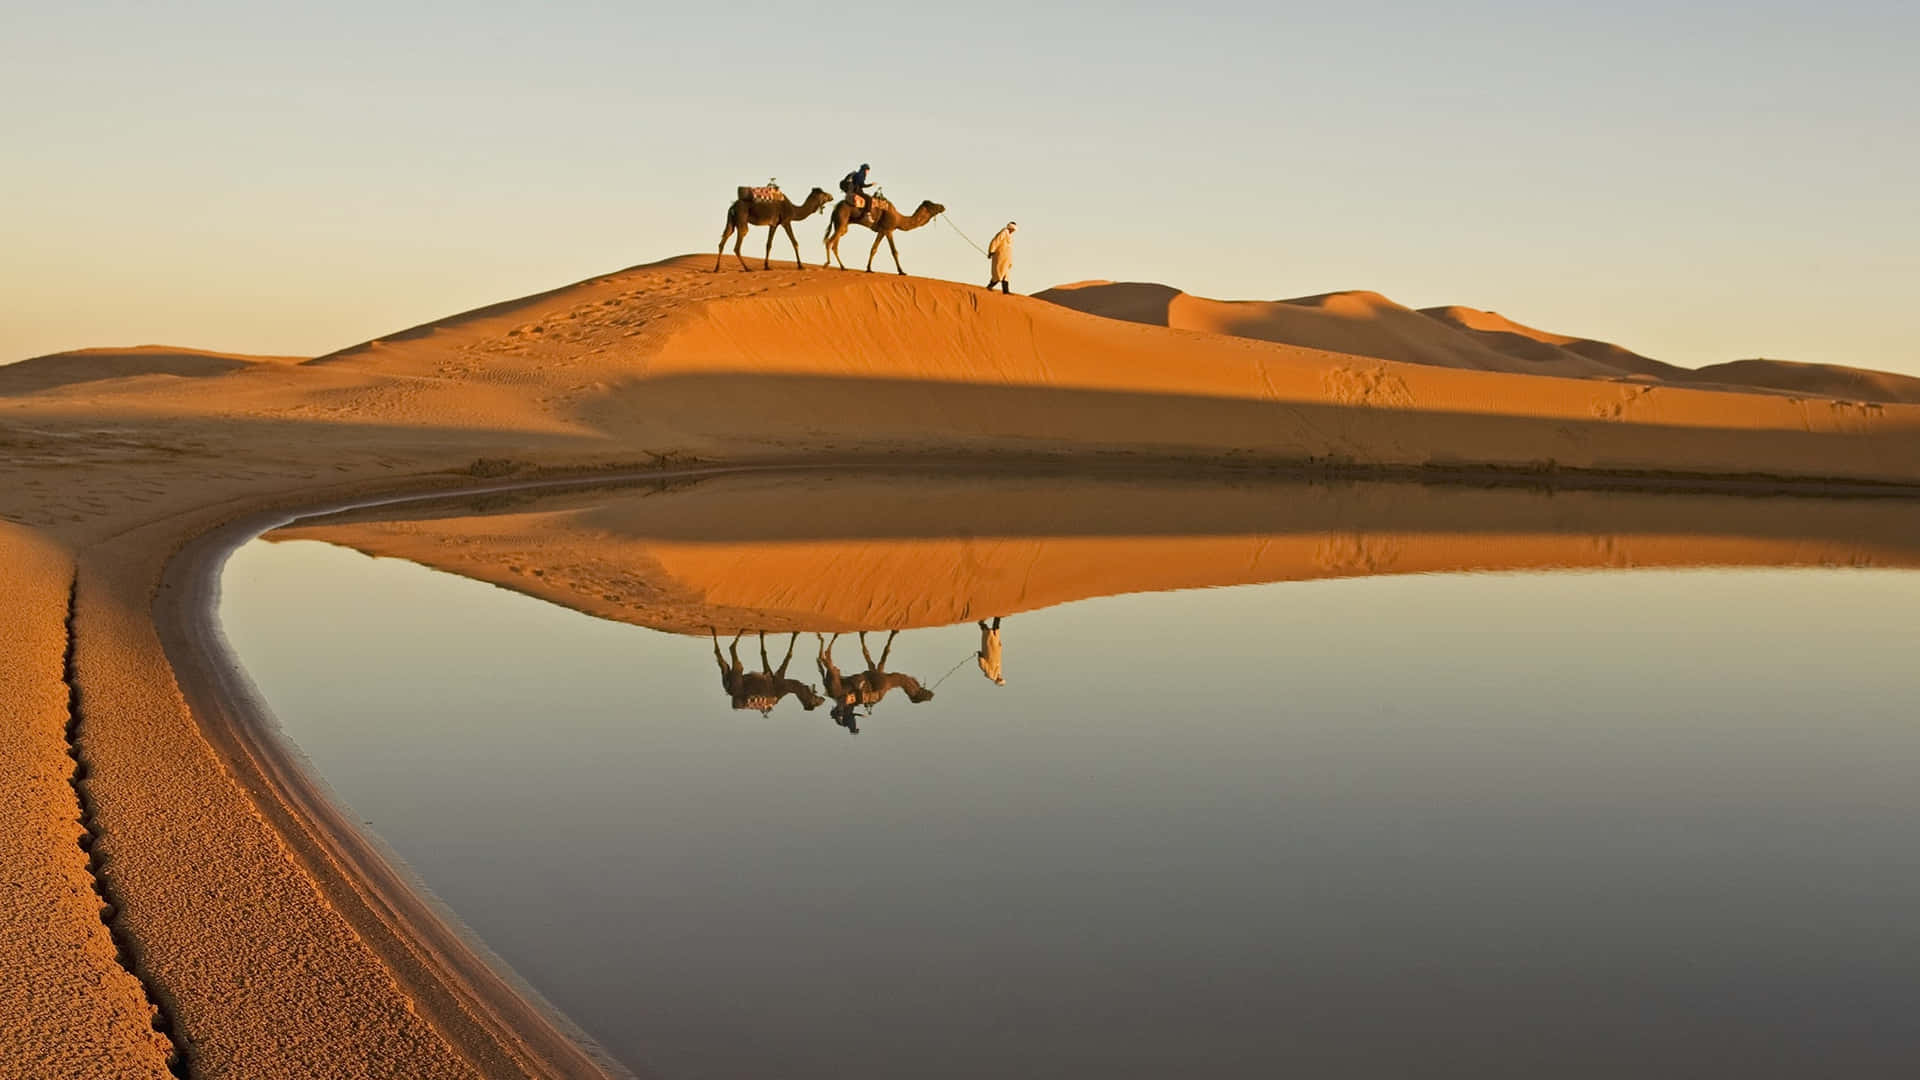 Beundrerskønheden I Den Imponerende Ørken.